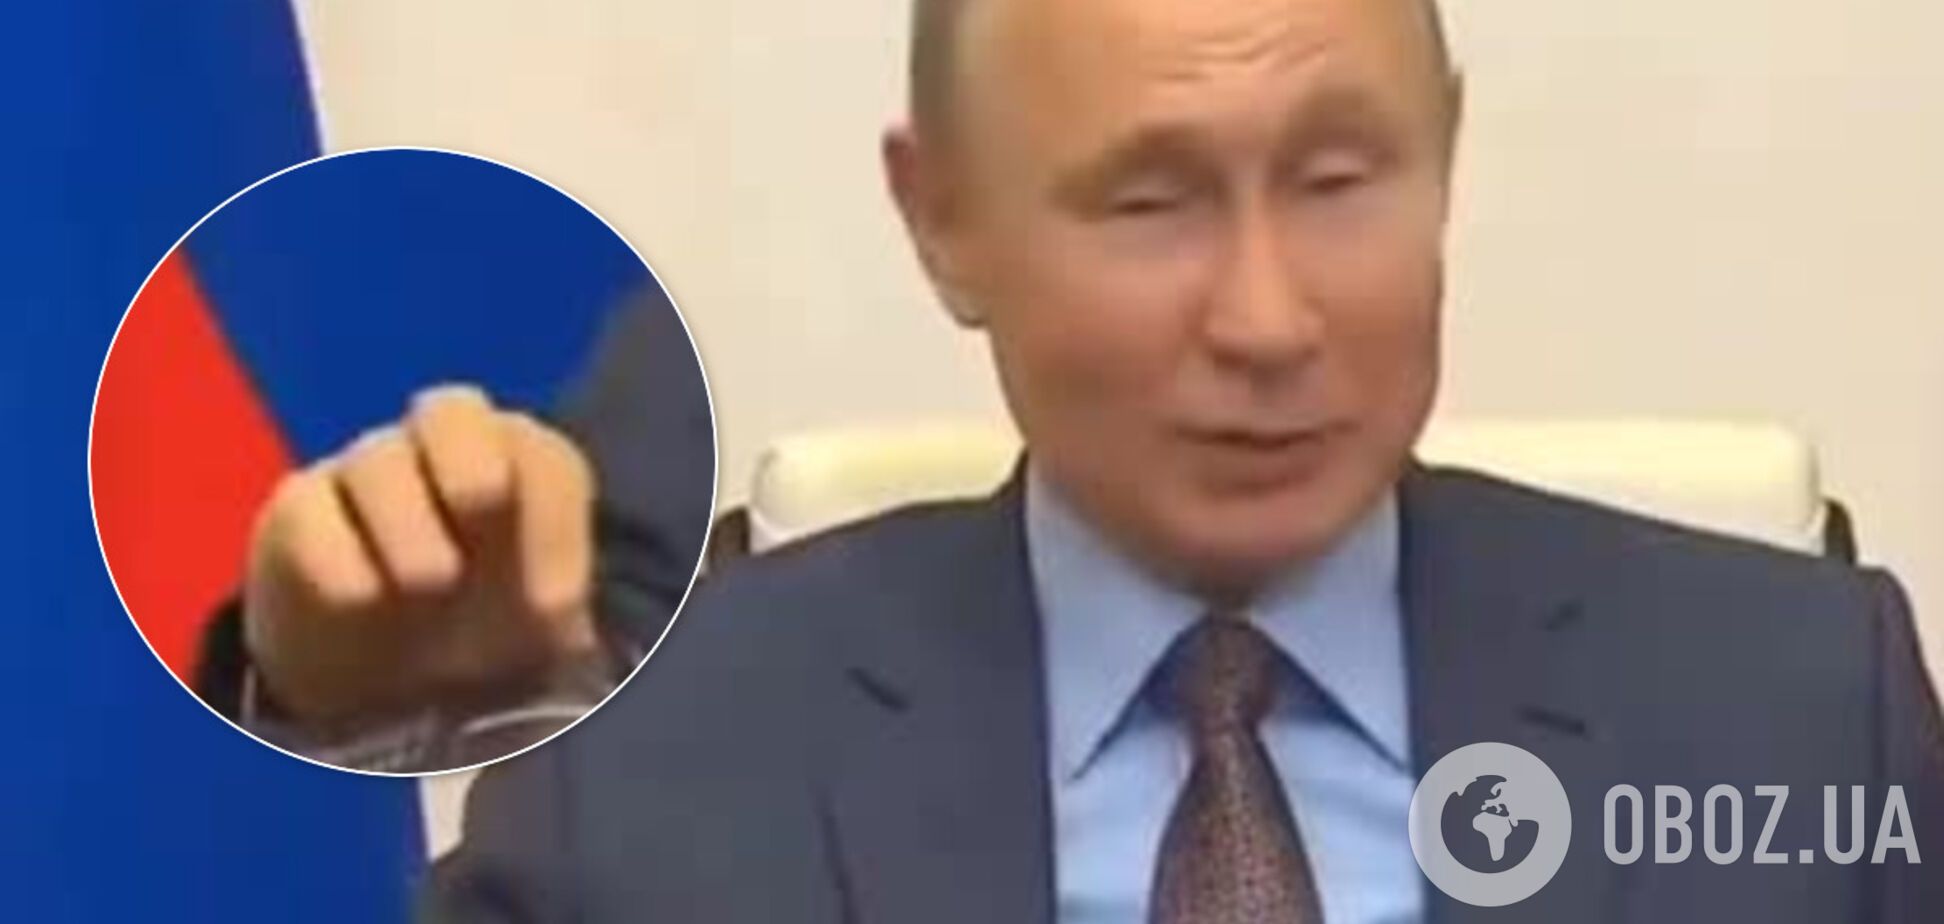 Мережу спантеличив несподіваний жест Путіна на нараді: відео